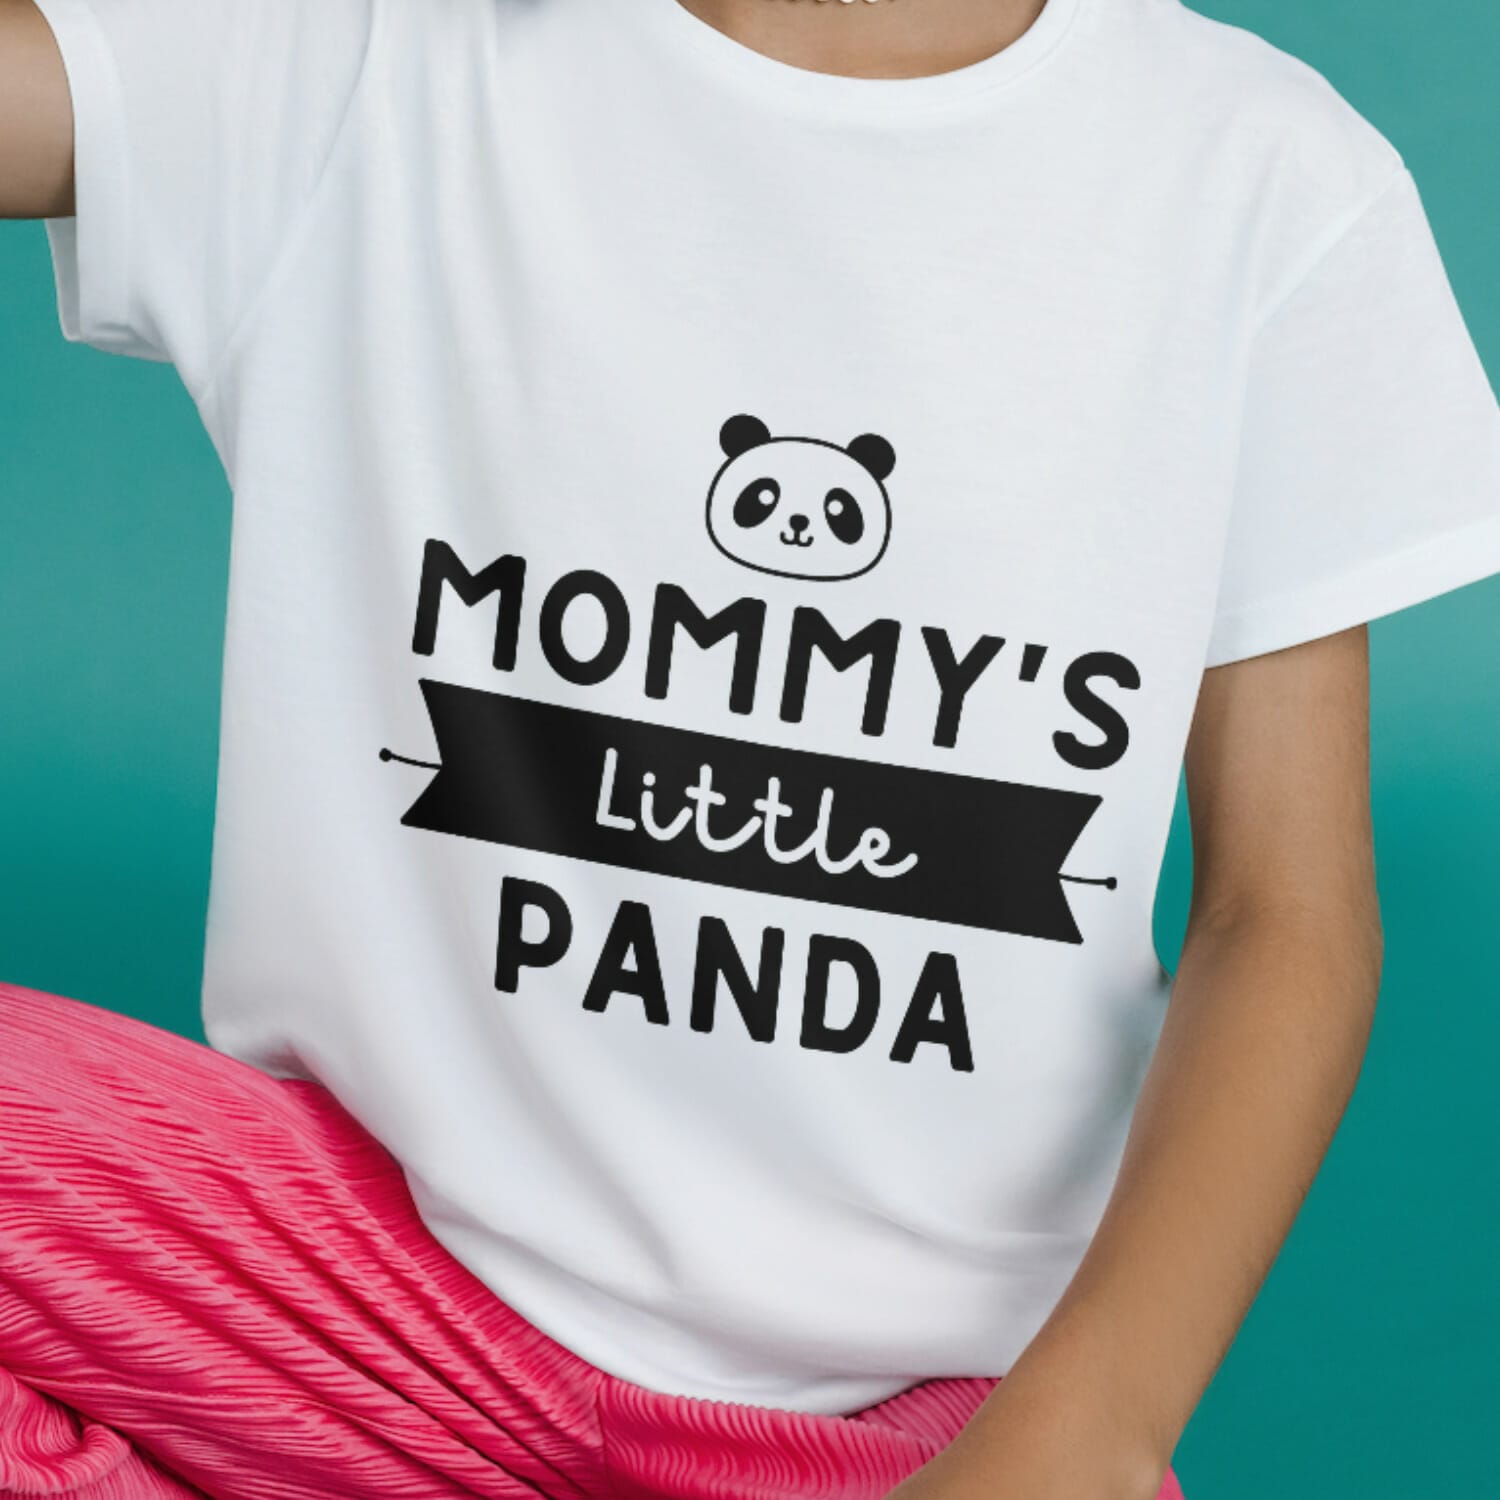 Mommys Little Panda Kids Tshirt Design